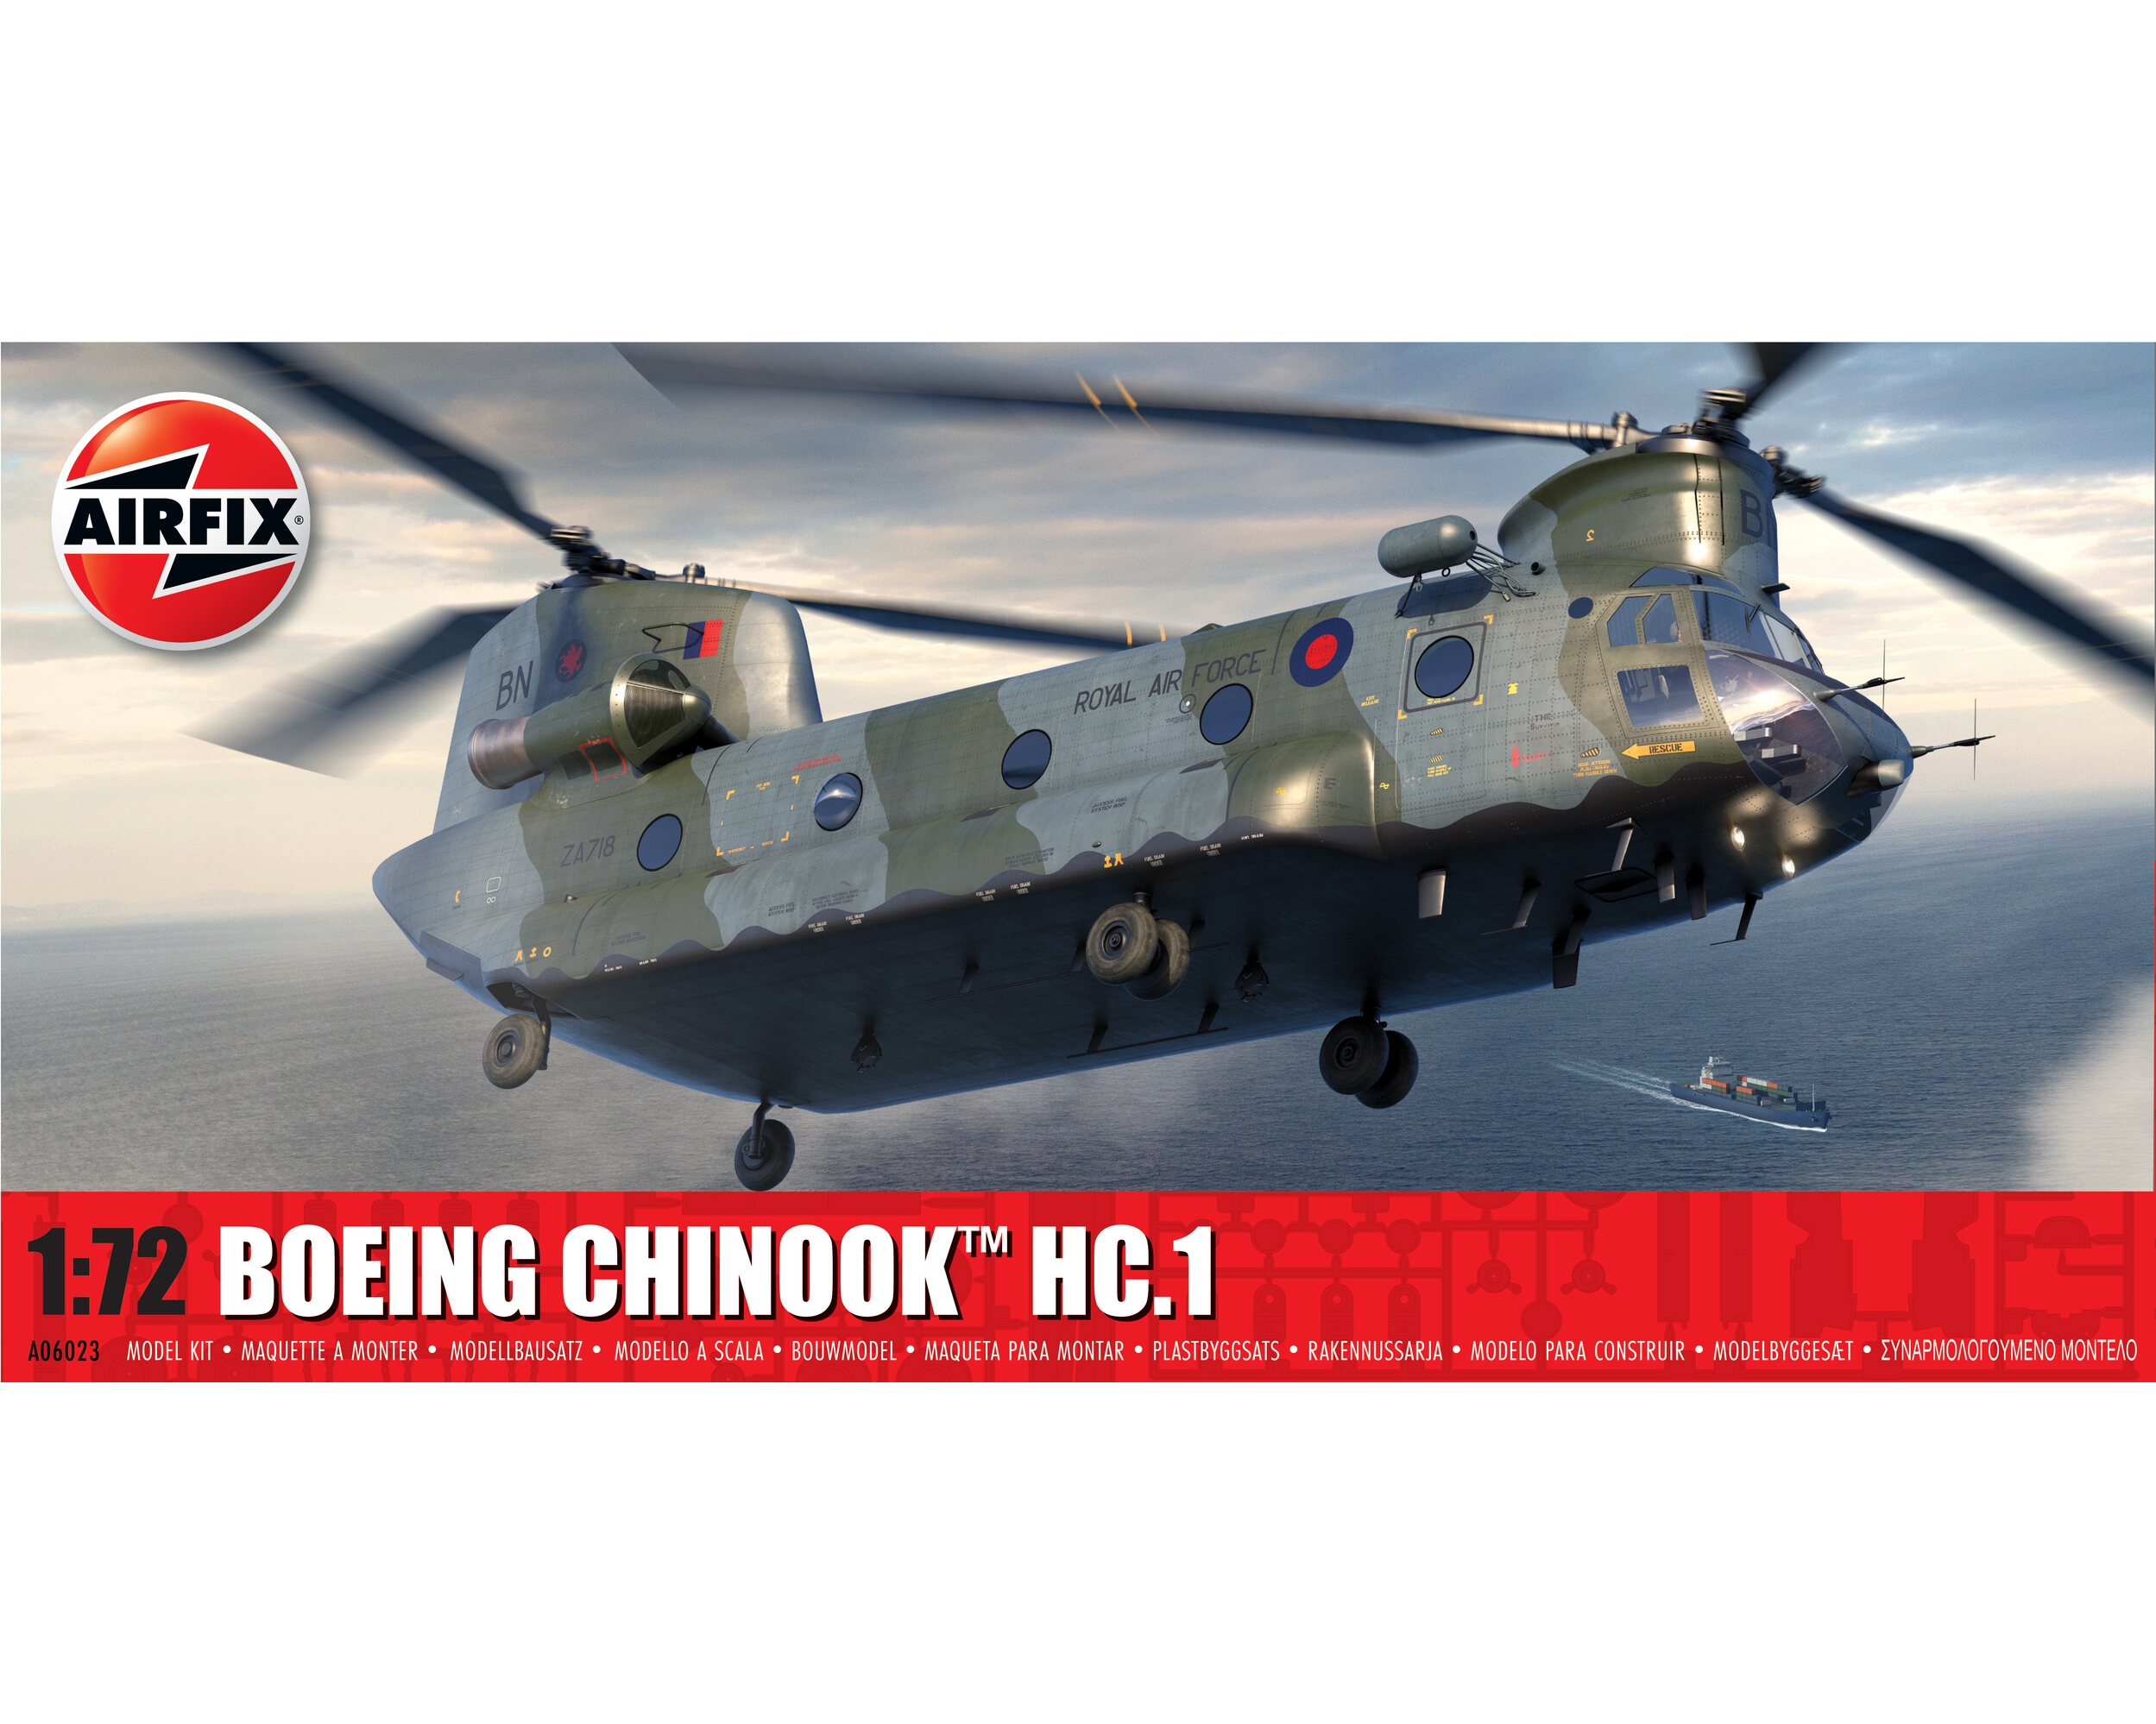 Airfix 06023 - BOEING CHINOOK HC.1